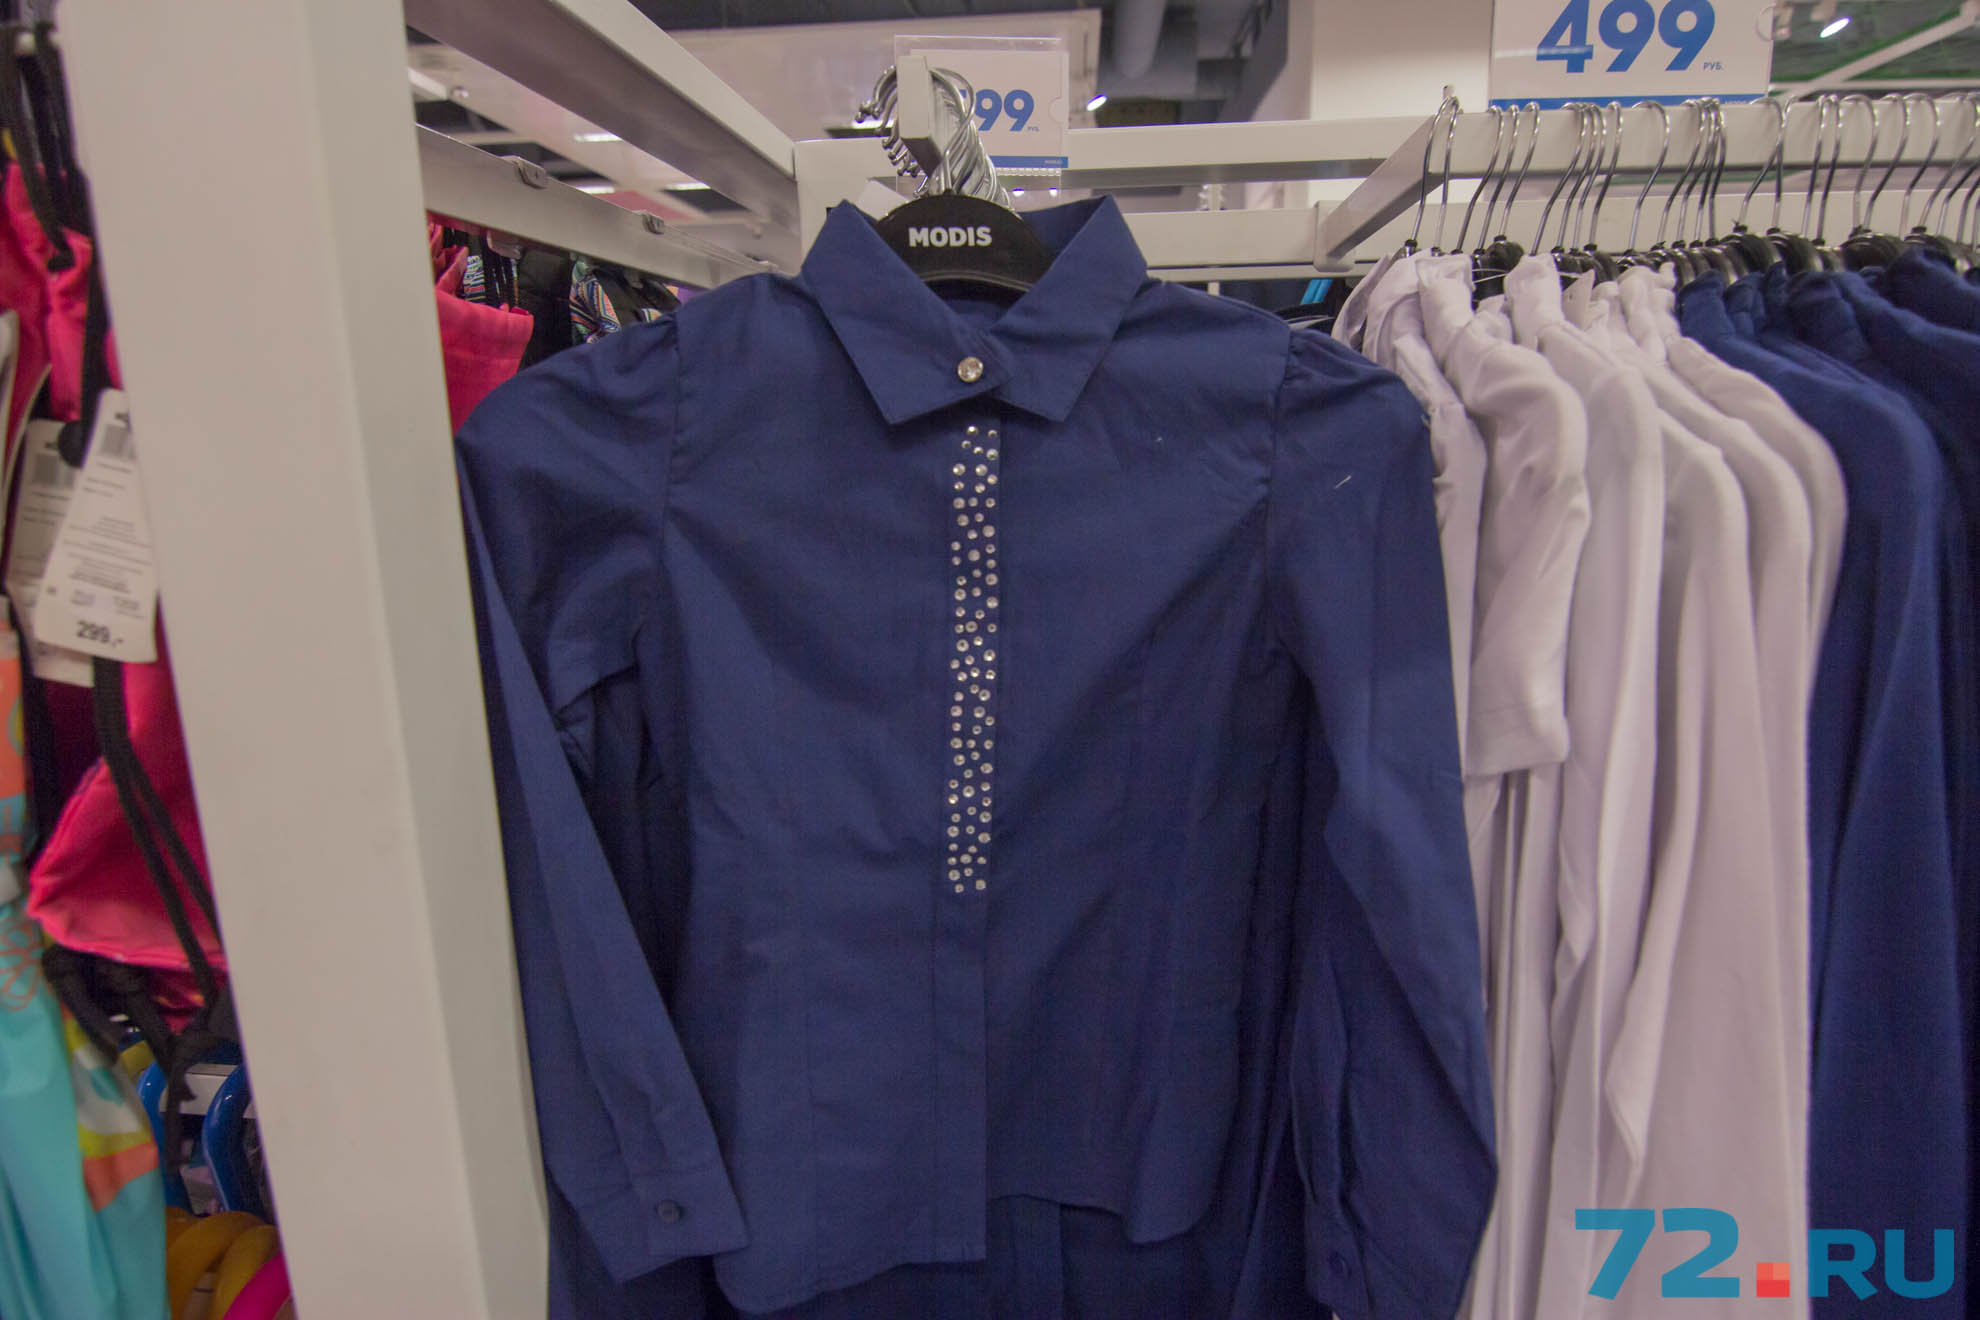 Стильная синяя рубашка на девочку стоит 599 рублей